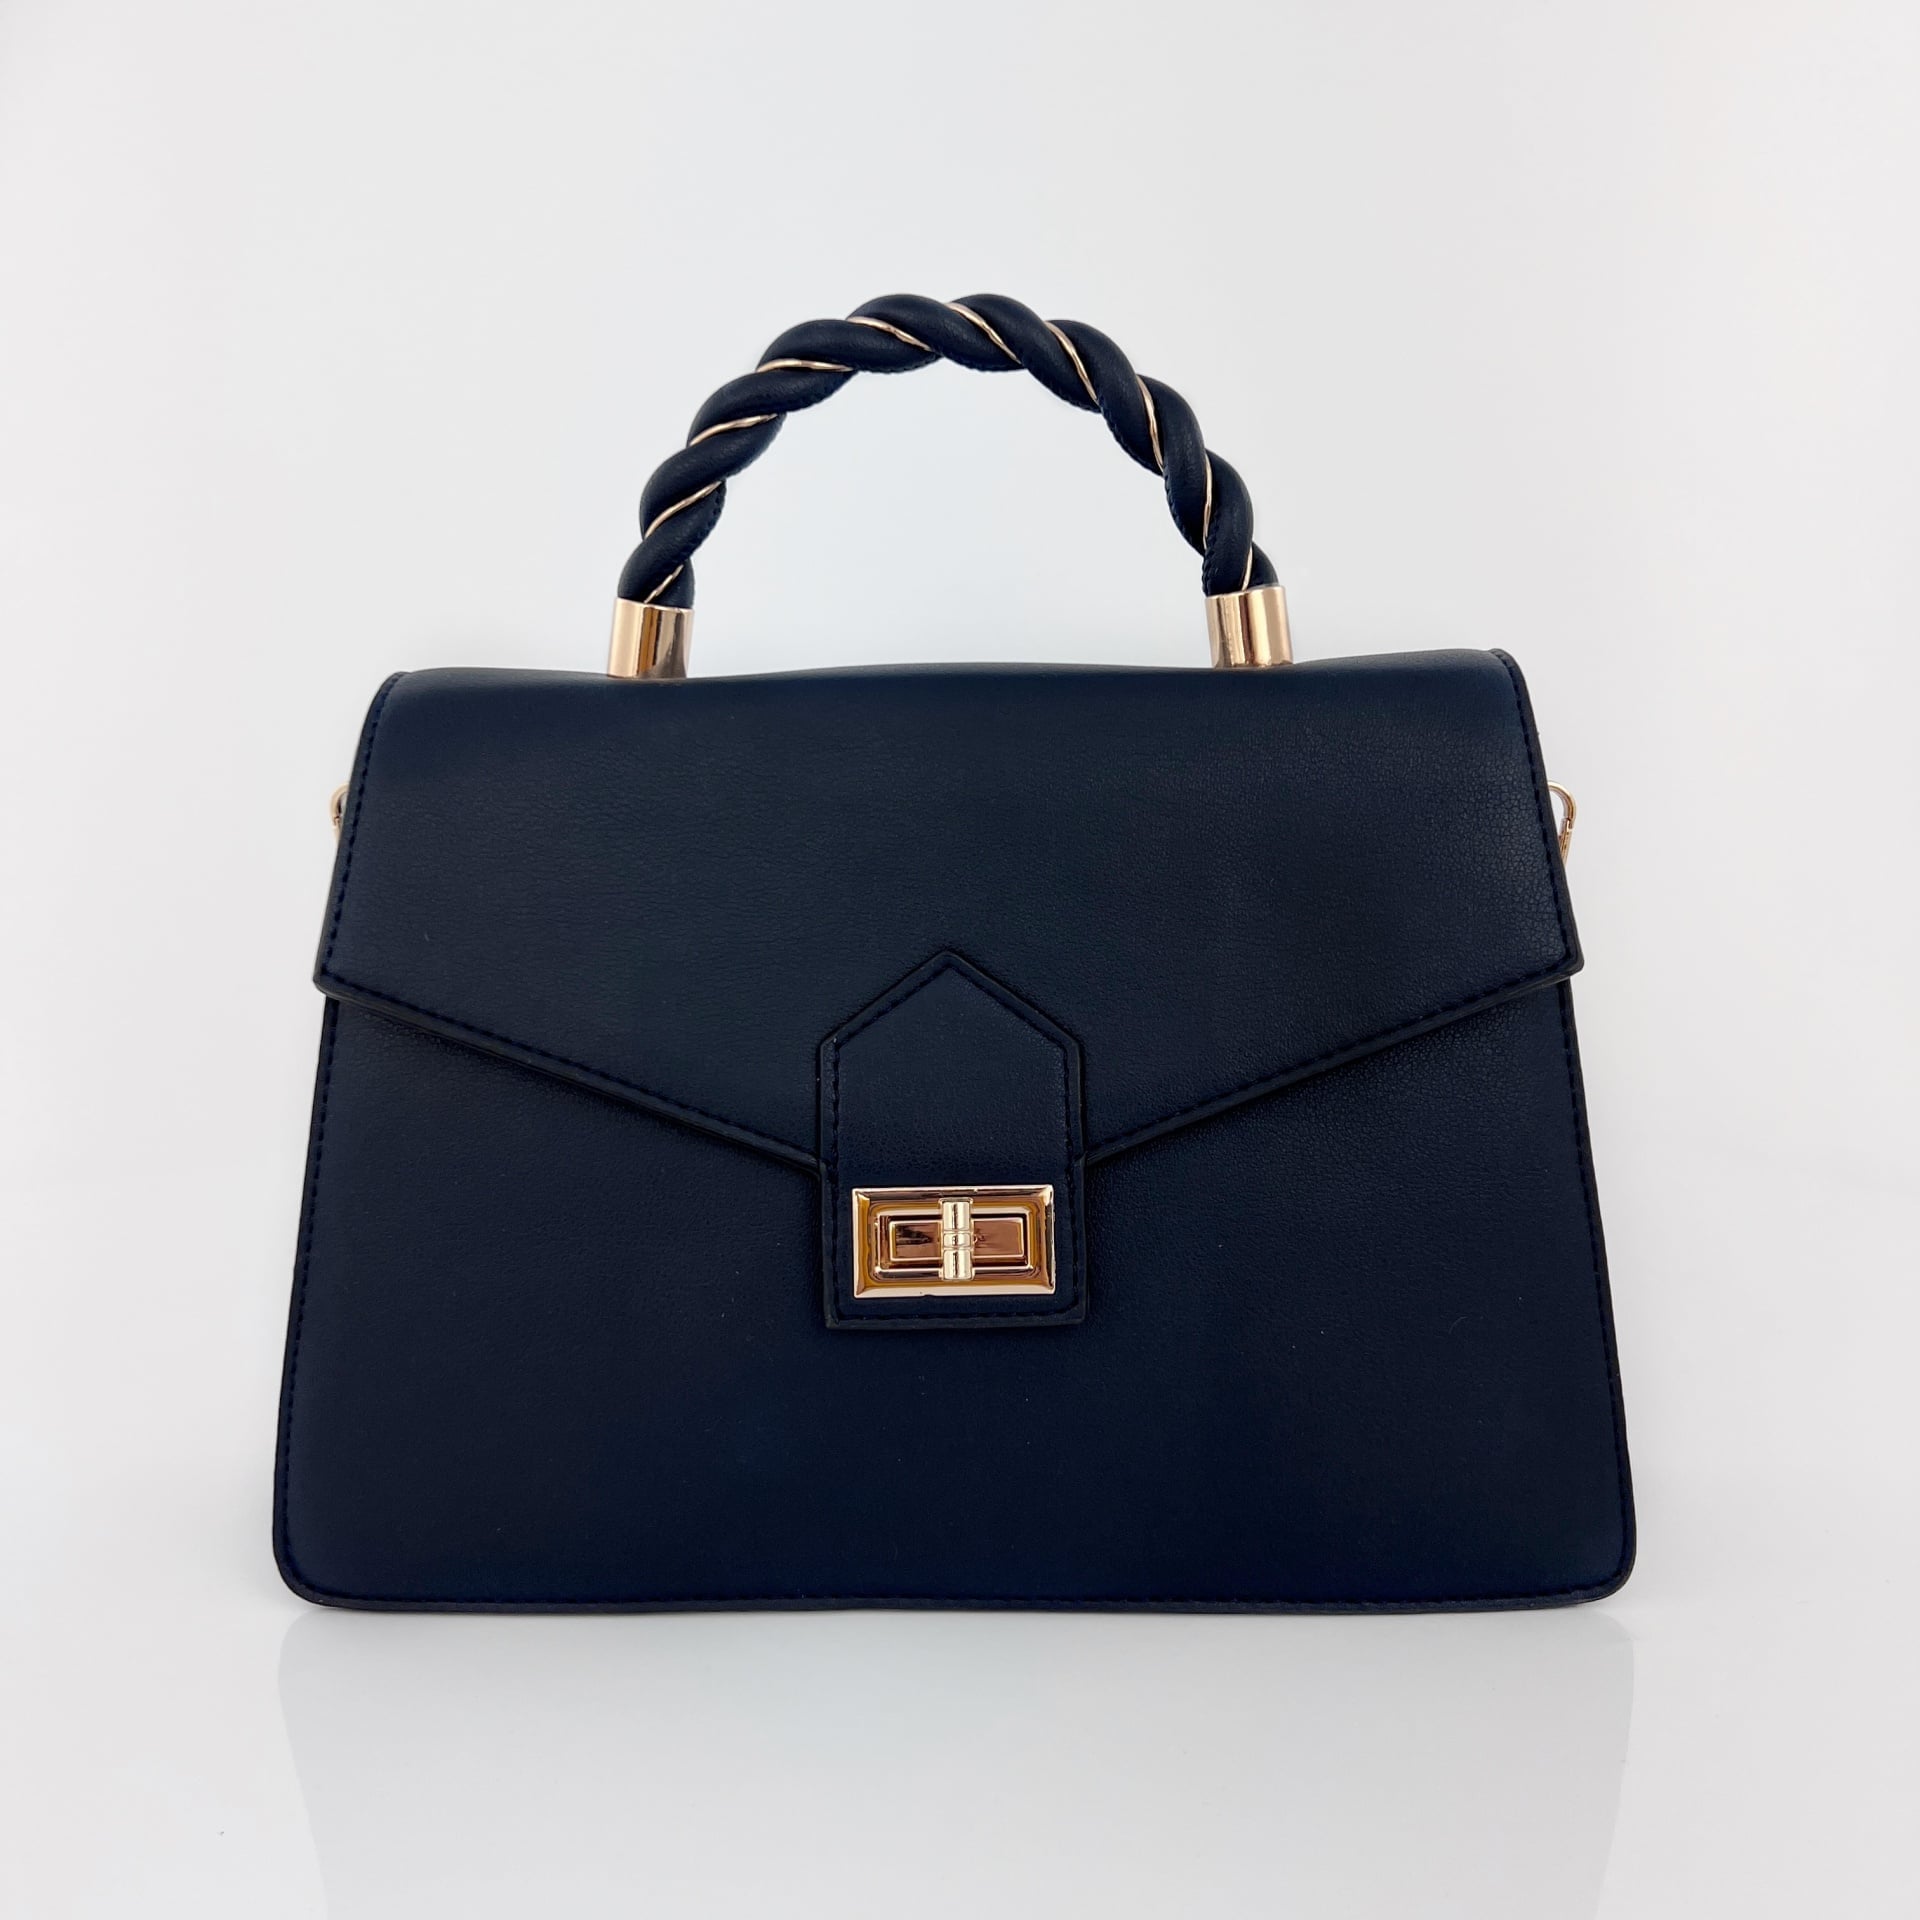 Бутикова дамска чанта Amira - тъмно синя 